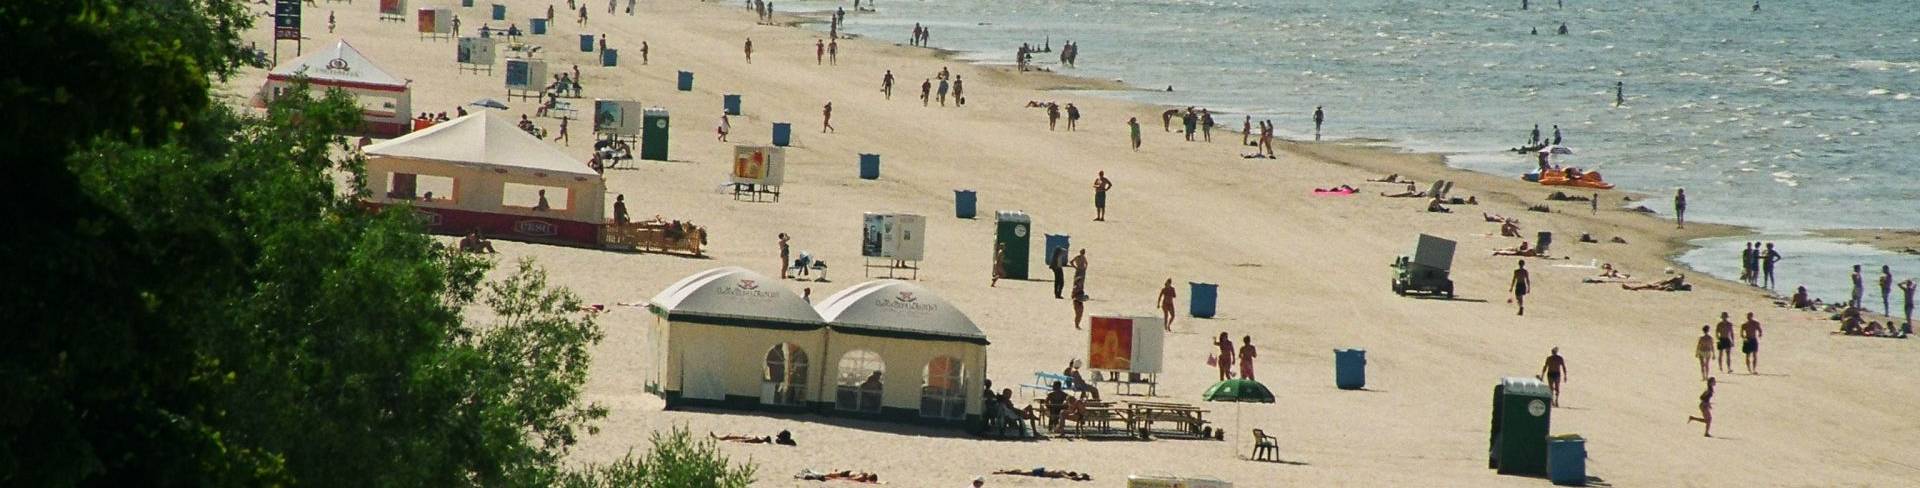 Юрмала - пляжный курорт в Латвии